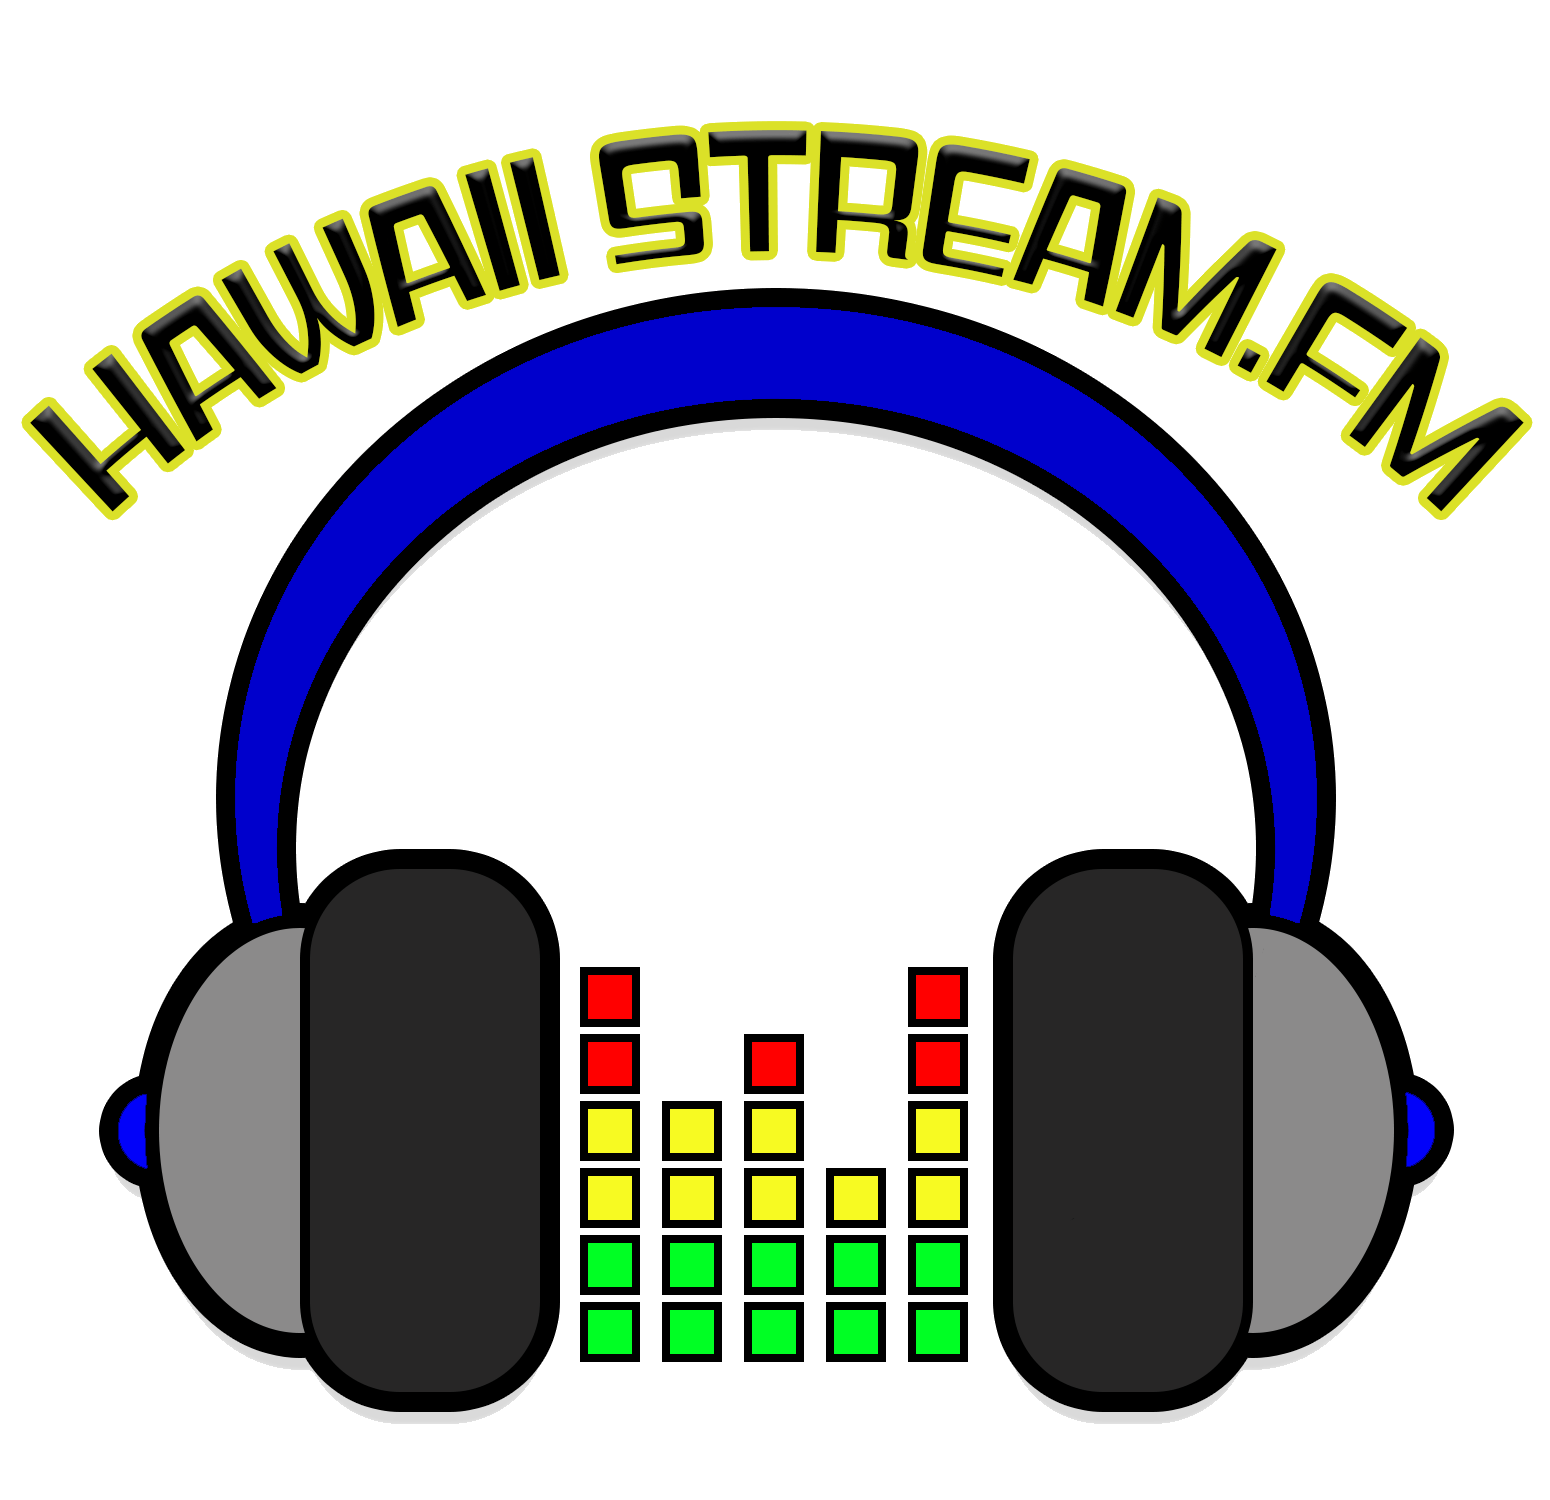 Hawaii Stream FM logo